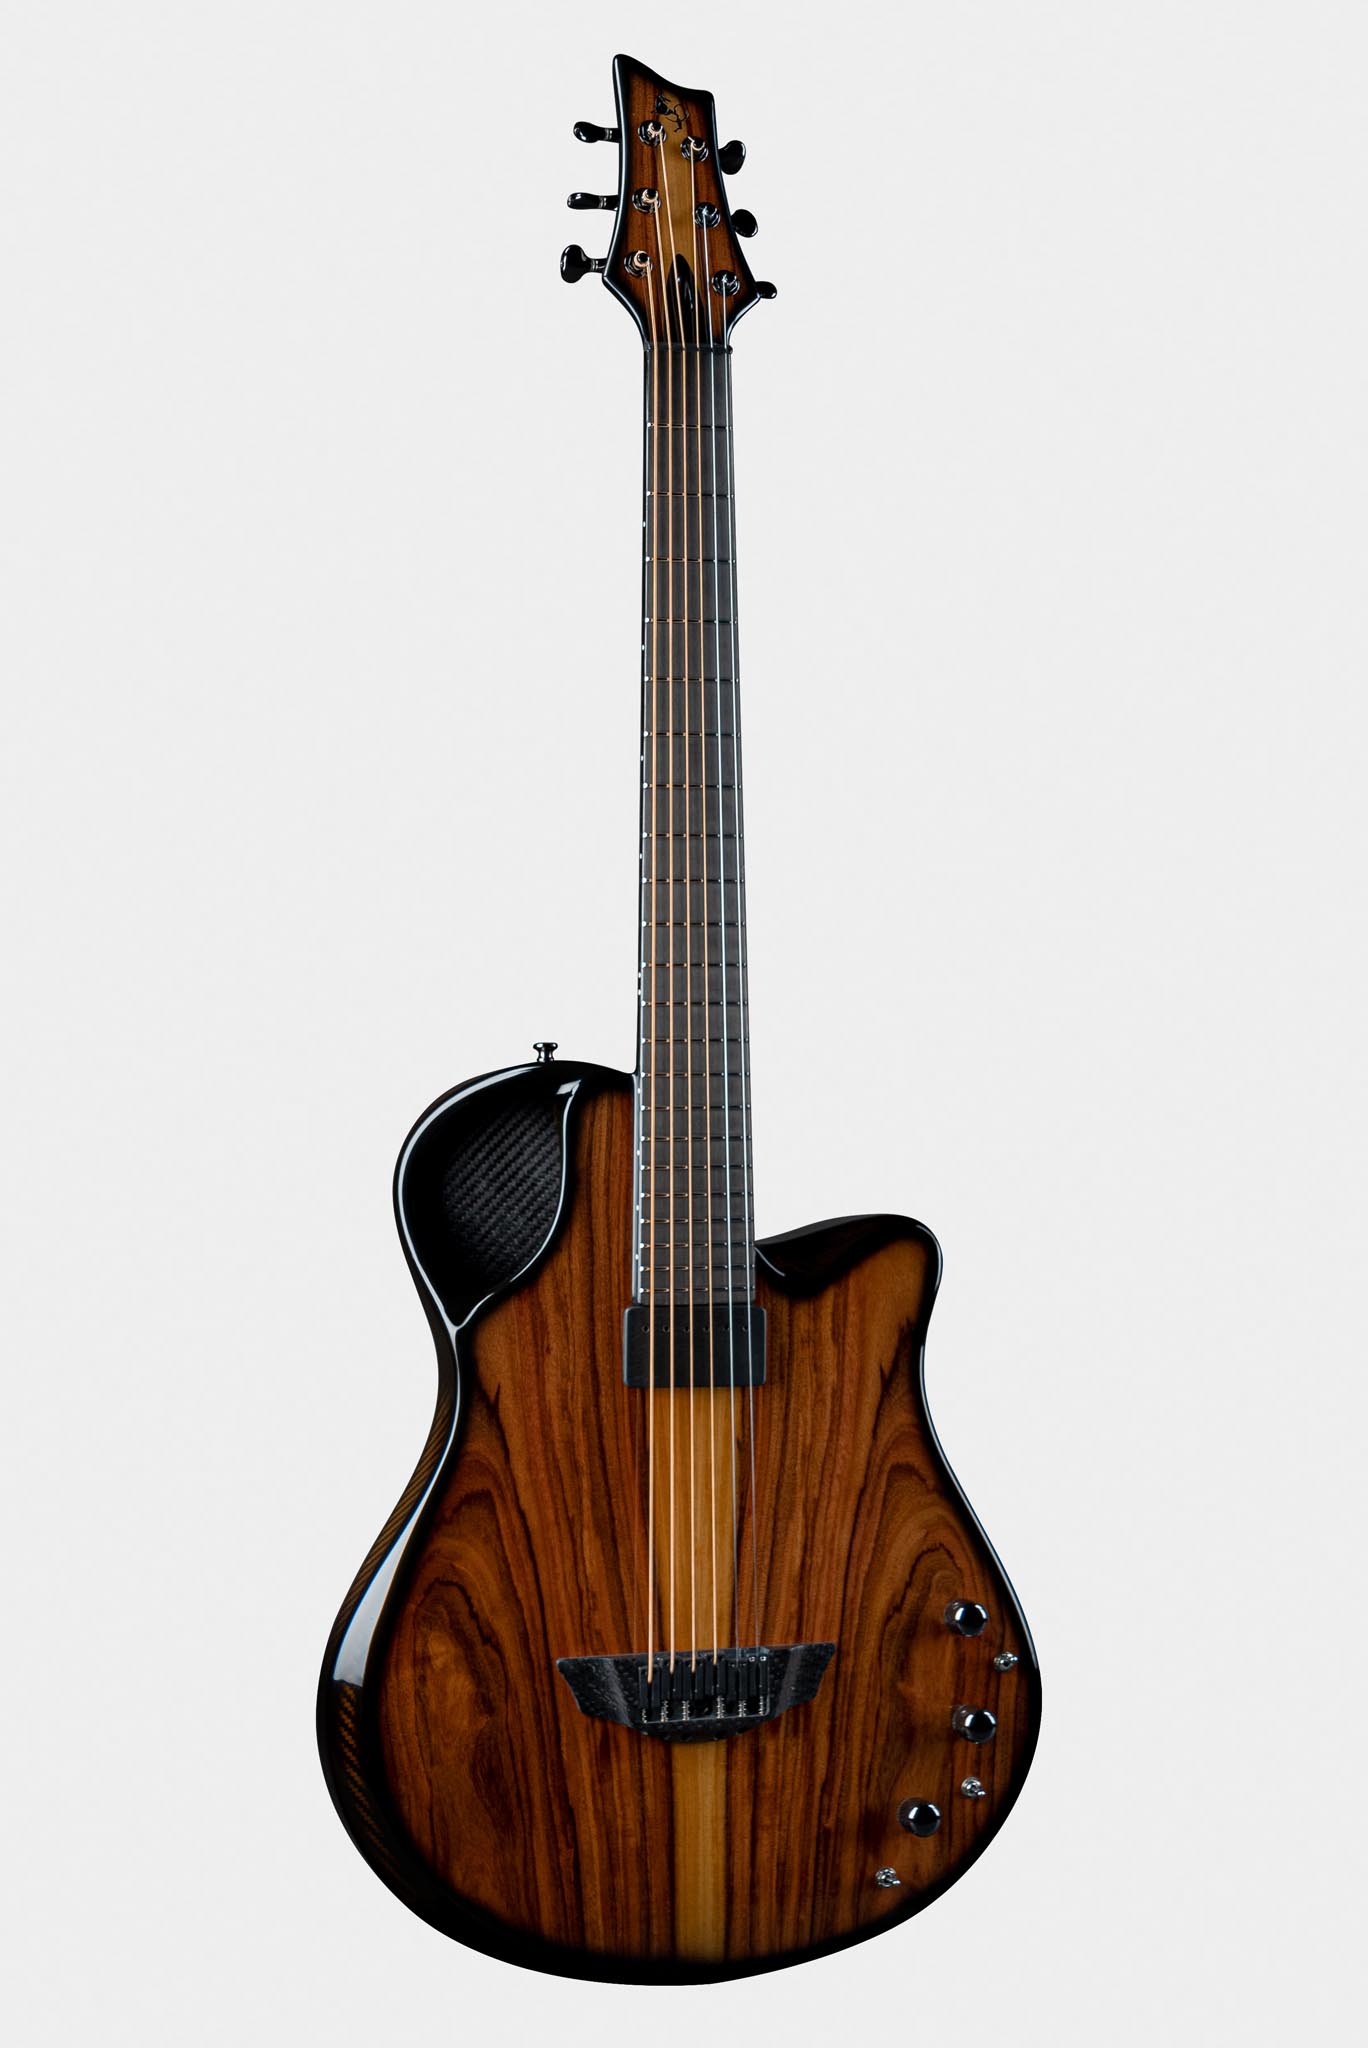 Emerald Virtuo guitar featuring ergonomic design, carbon fiber structure, and versatile sound capabilities